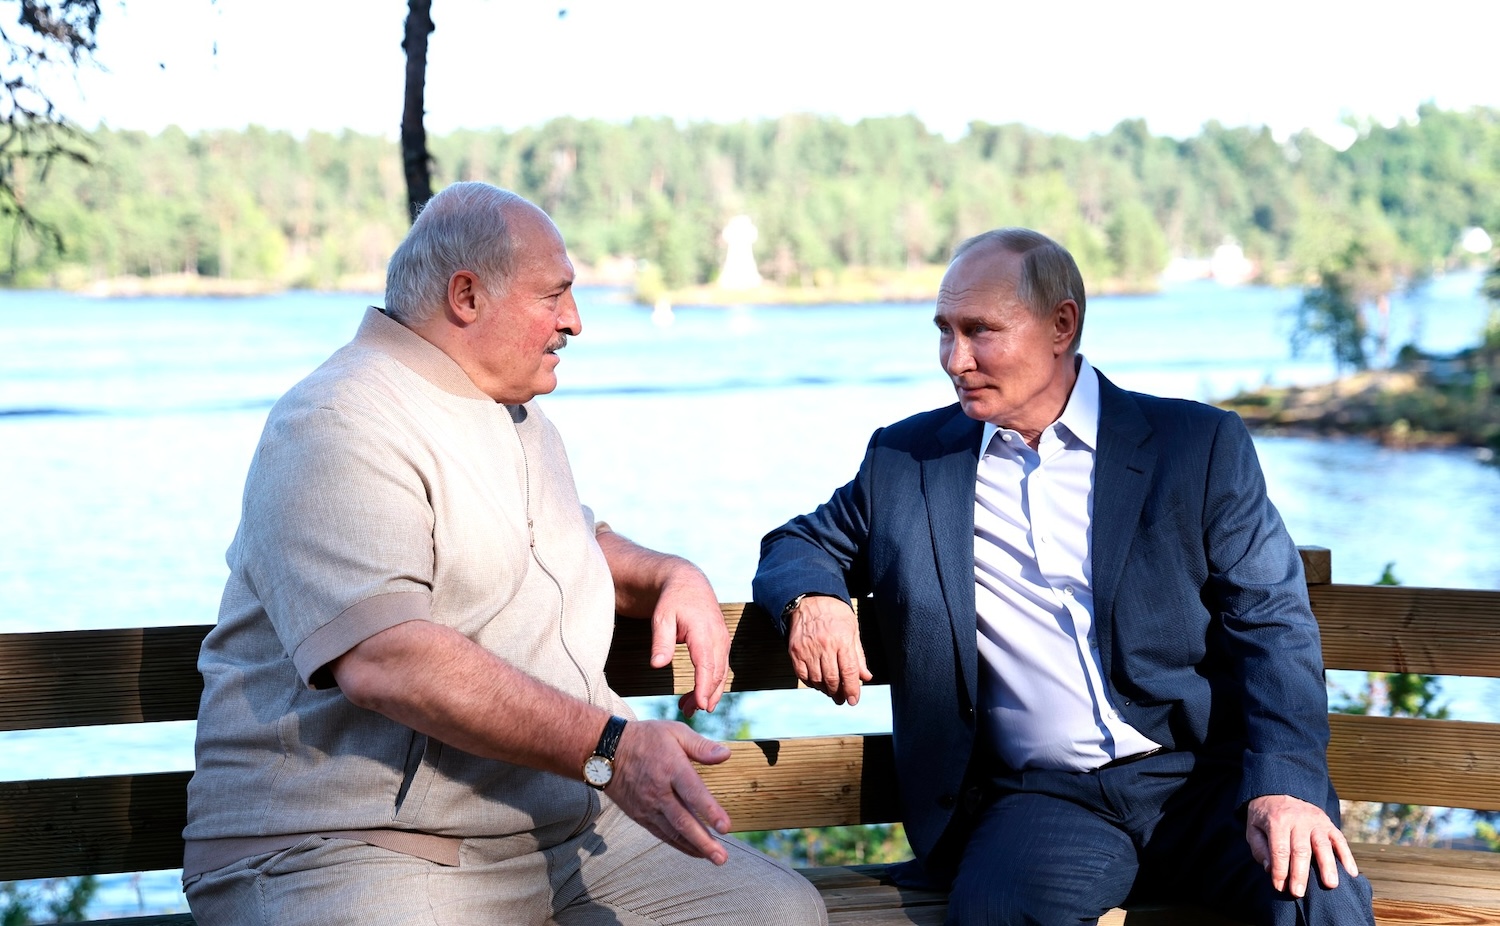 Фотошоп не помог Лукашенко скрыть страдания и избавиться от лишнего веса - фотофакт